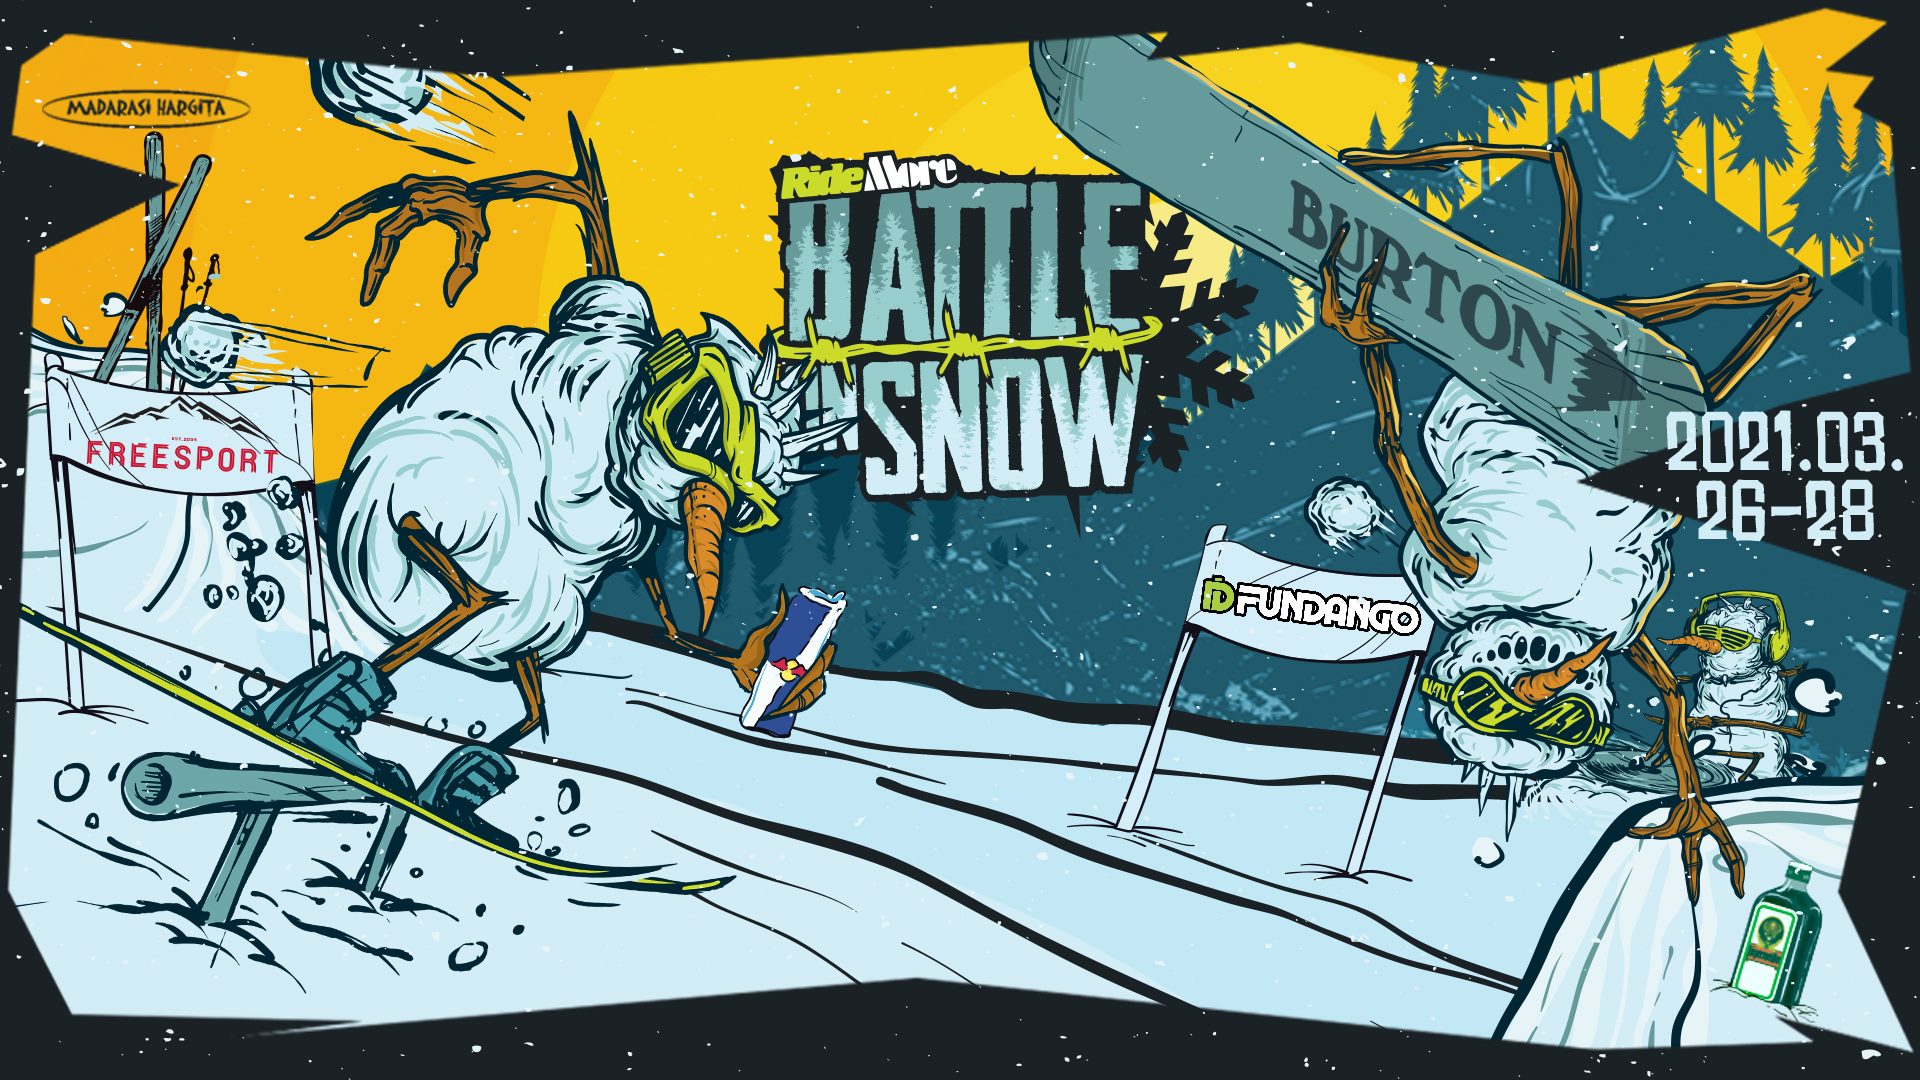 Battle on Snow